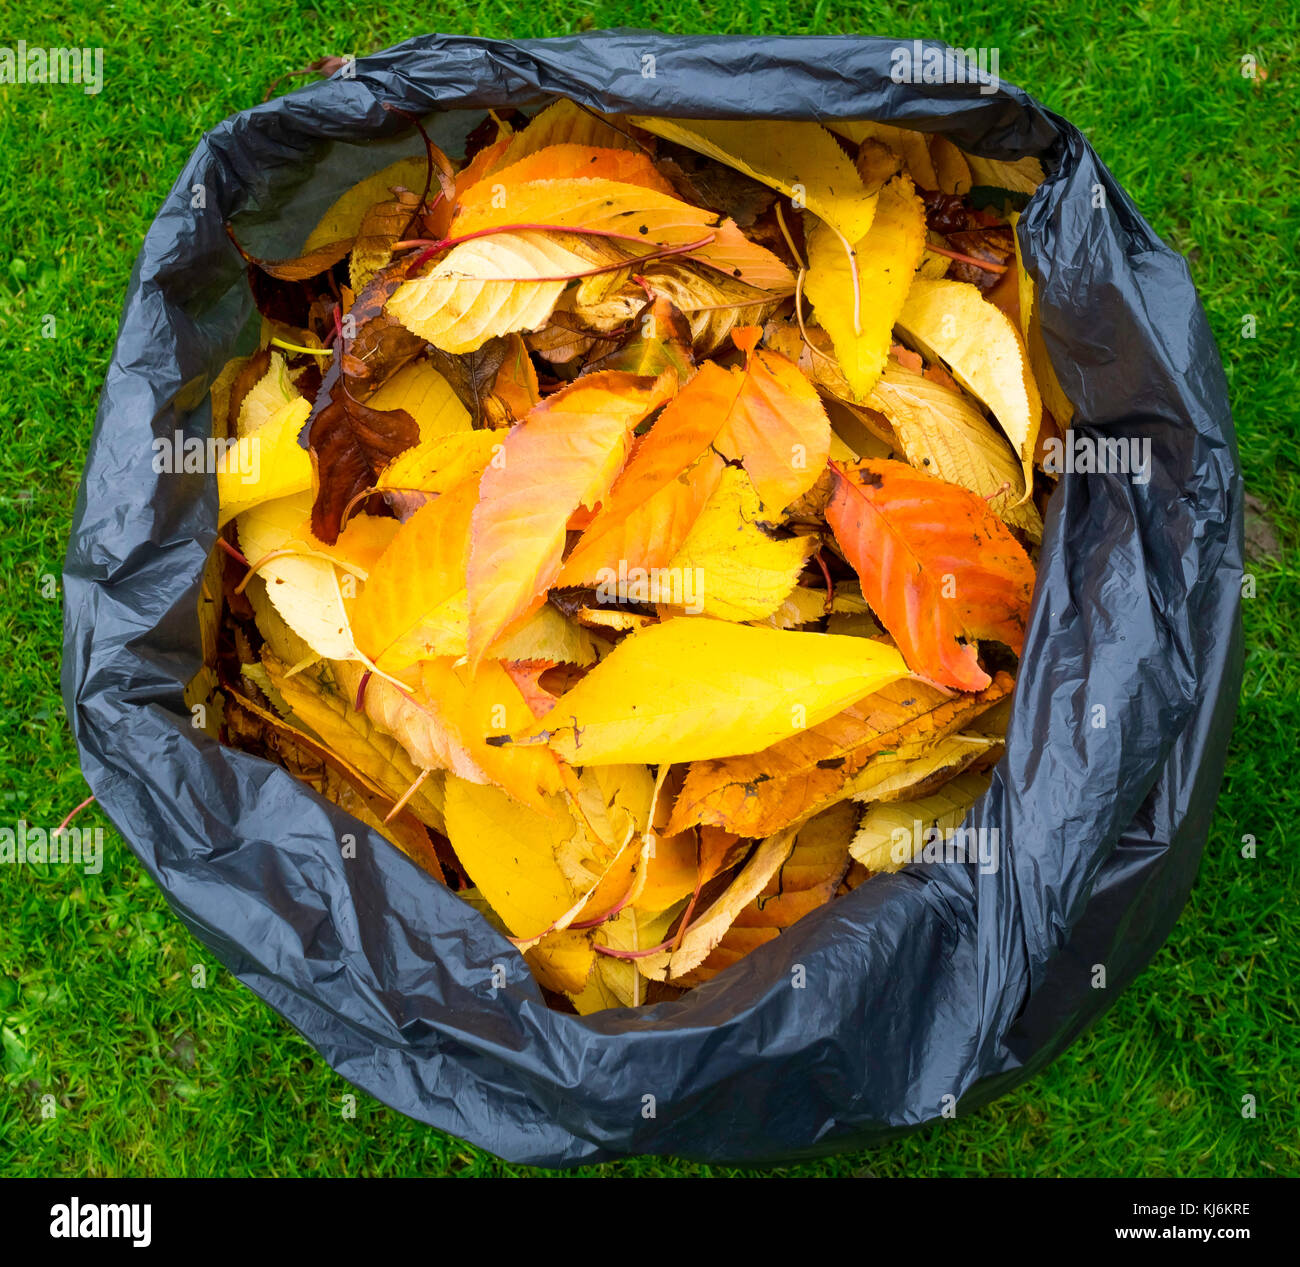 Sac en plastique noir rempli d'automne les feuilles mortes, qui se décompose dans le sac de feuilles formant un moule utile l'engrais de jardin Banque D'Images